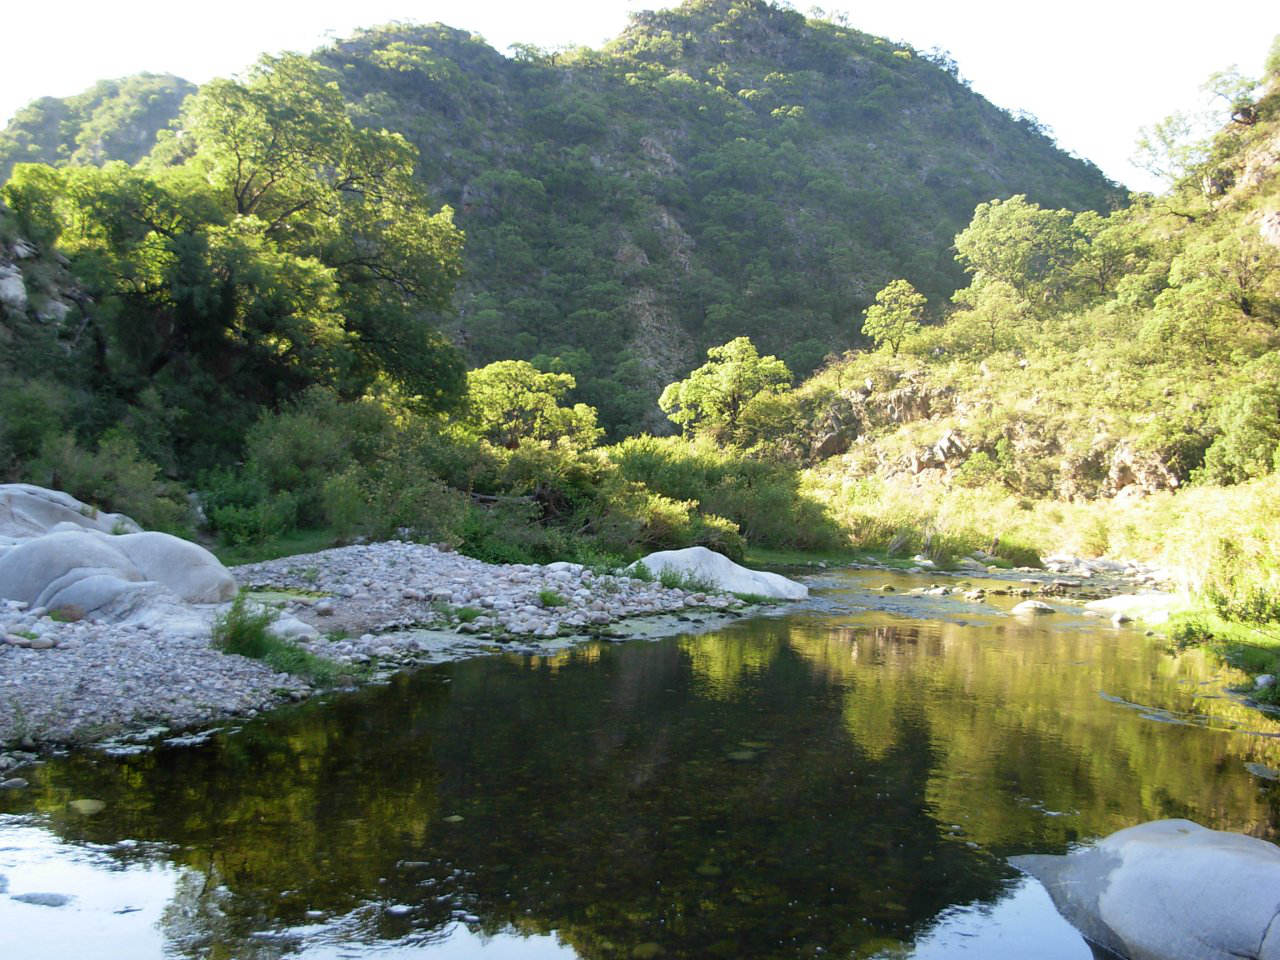 La foto muestra un primer plano del río San Marcos en medio del monte nativo a pocos metros de la hostería.